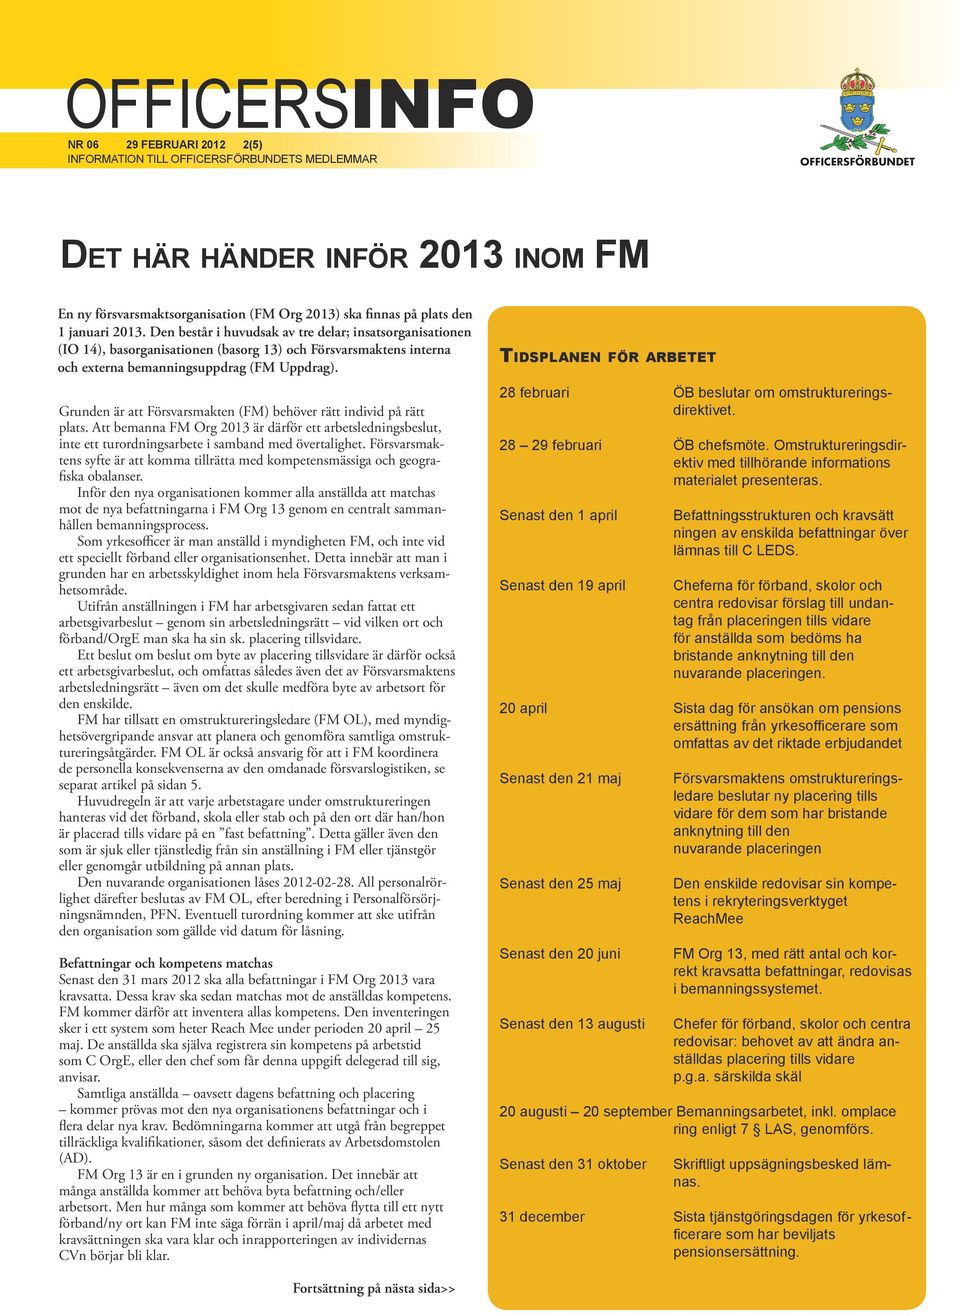 Grunden är att Försvarsmakten (FM) behöver rätt individ på rätt plats. Att bemanna FM Org 2013 är därför ett arbetsledningsbeslut, inte ett turordningsarbete i samband med övertalighet.